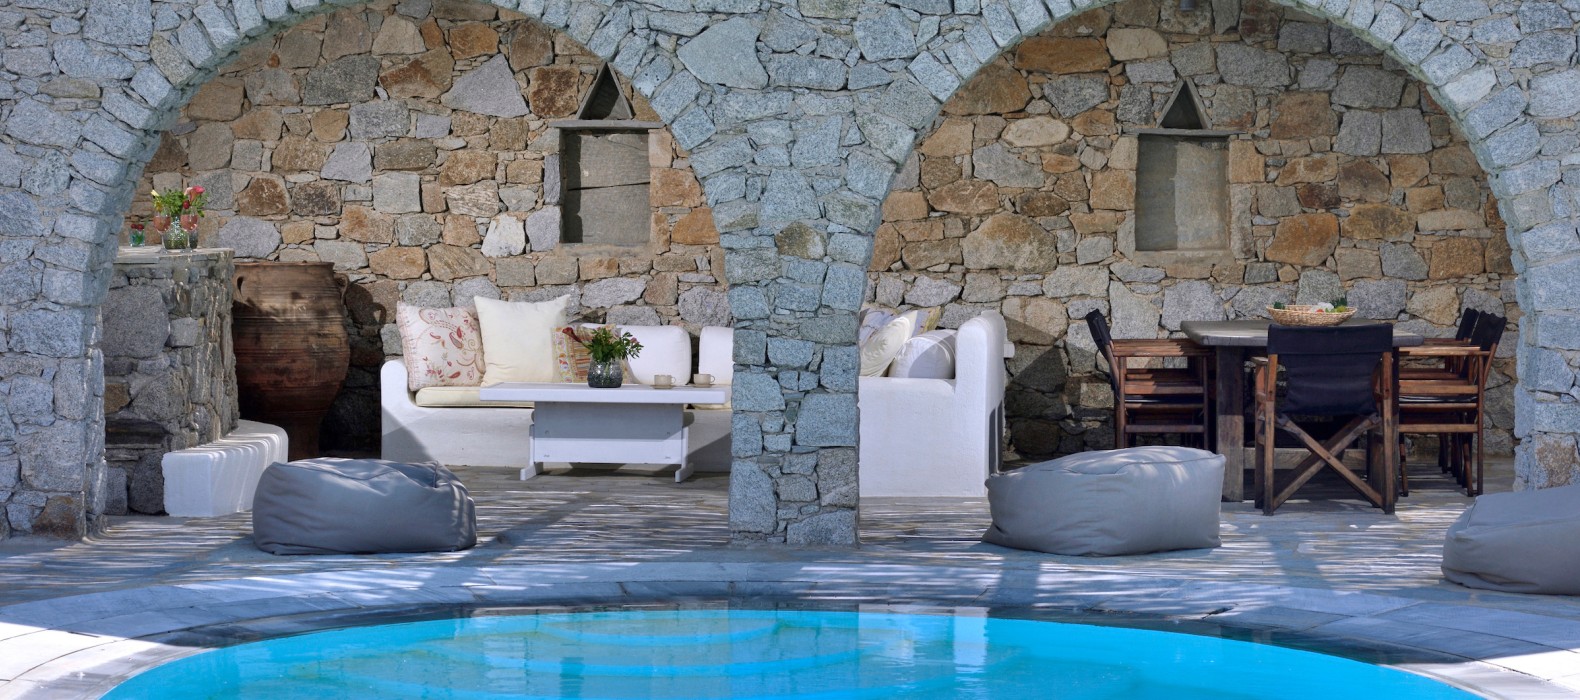 Exterior pool area of Villa Mythos in Mykonos